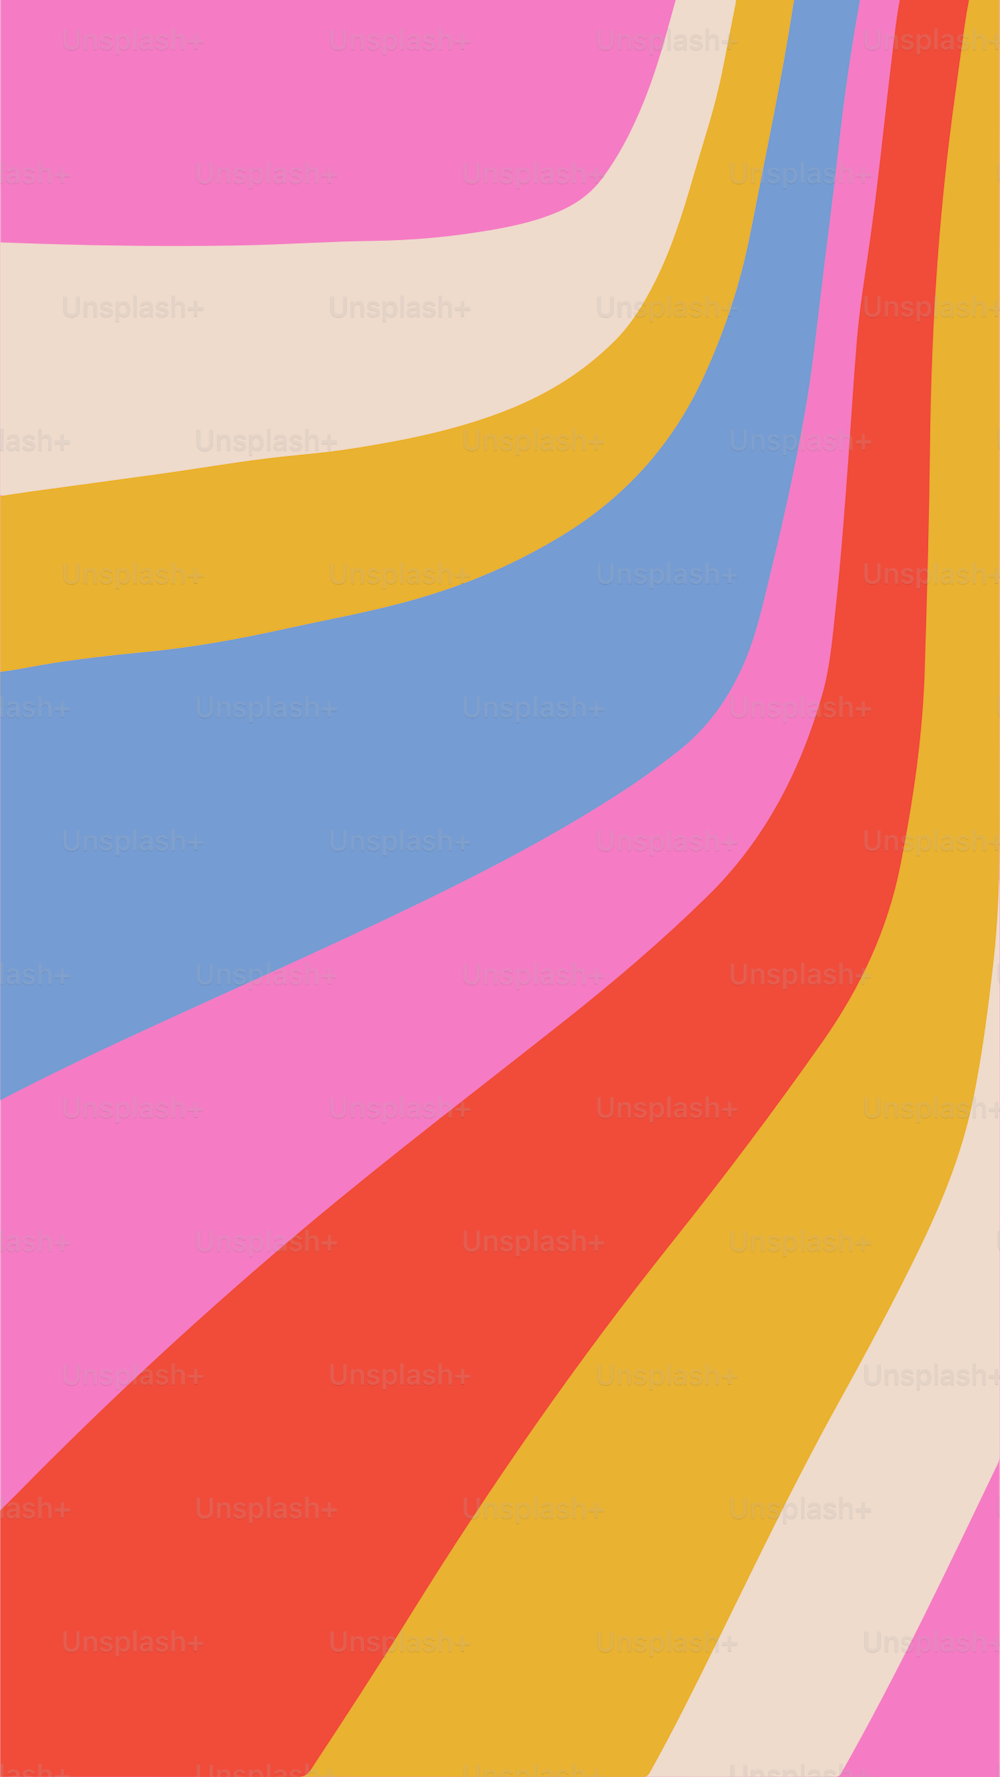 Groovy Retro Style Rainbow Wave Stripes Background. Illustration verticale simple vectorielle pour les médias sociaux en taille d’écran de téléphone.